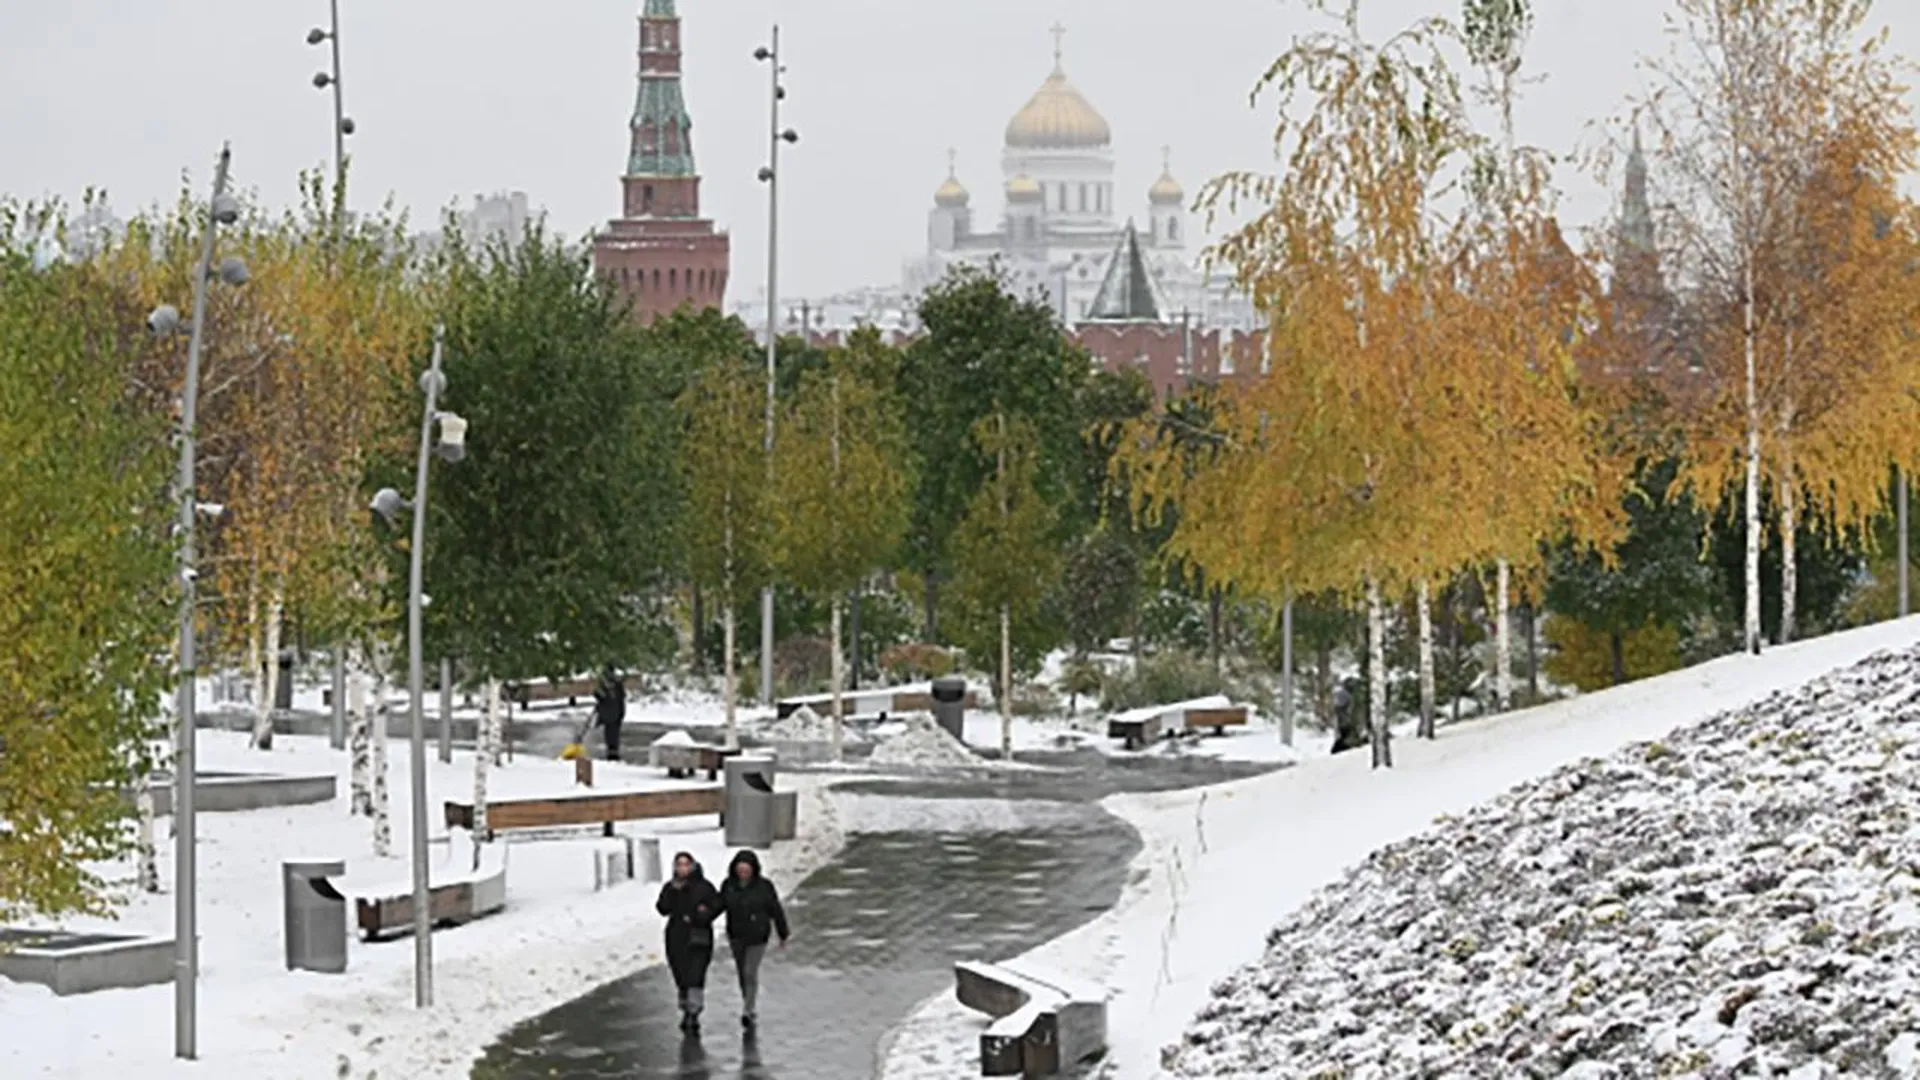 Снег, гололедица, низкое давление: метеоролог рассказал, какая погода ждет жителей Москвы и Подмосковья в выходные